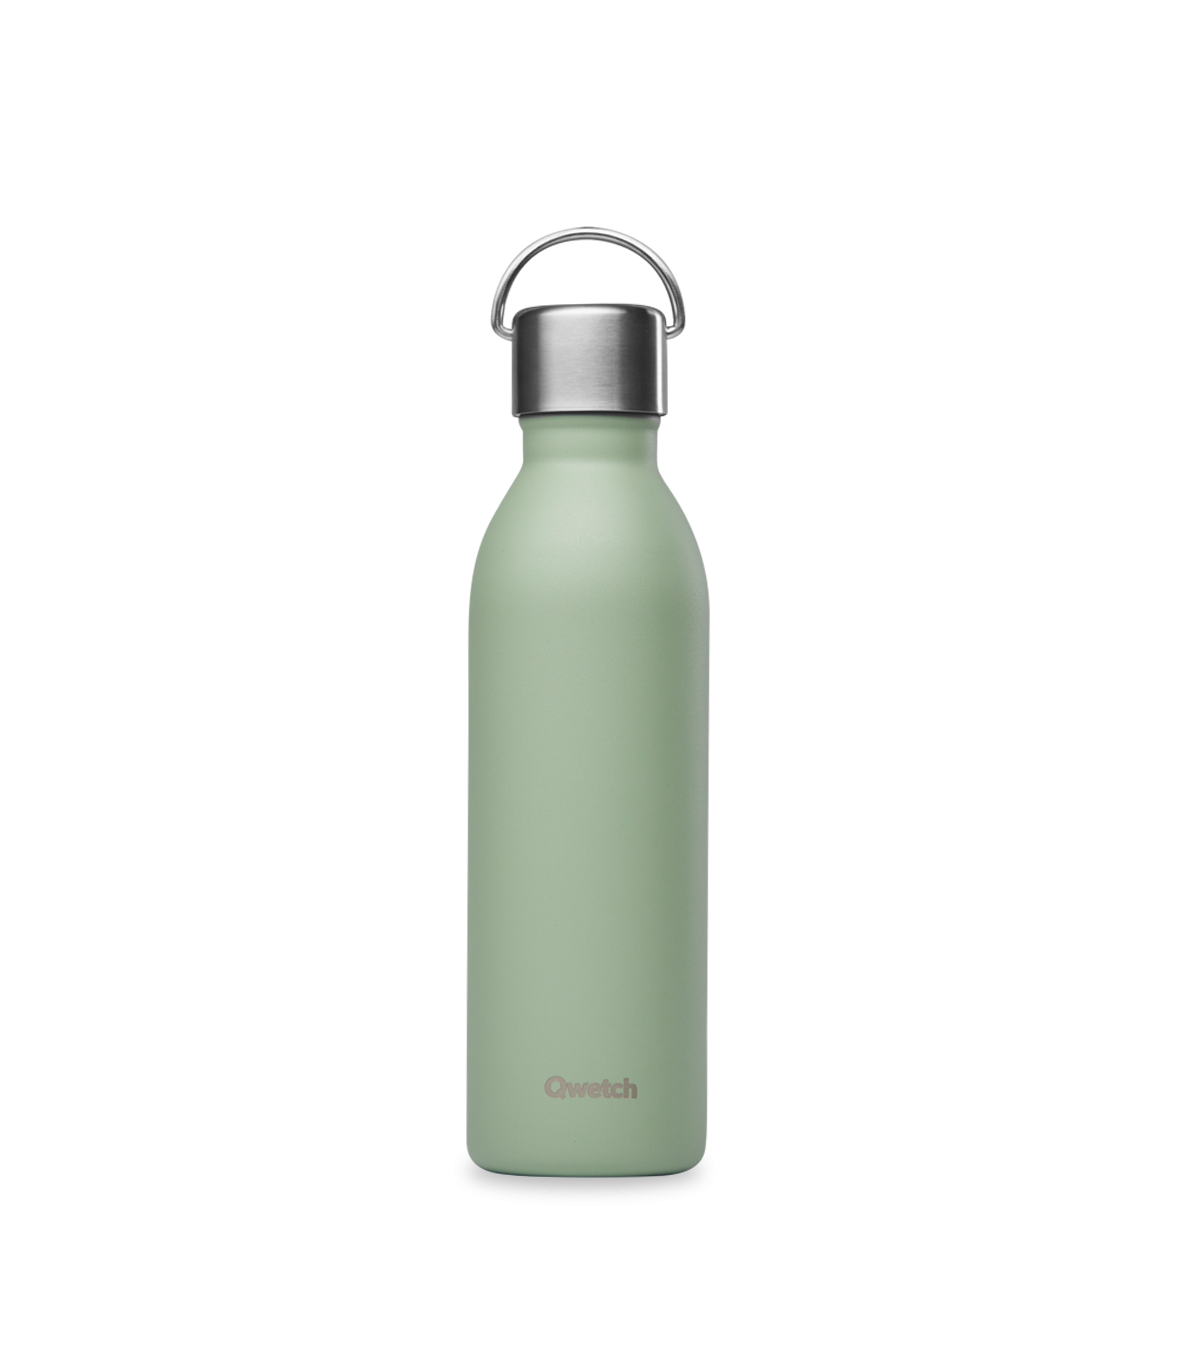 Botella de acero inoxidable reutilizable Sport Bottle 1l